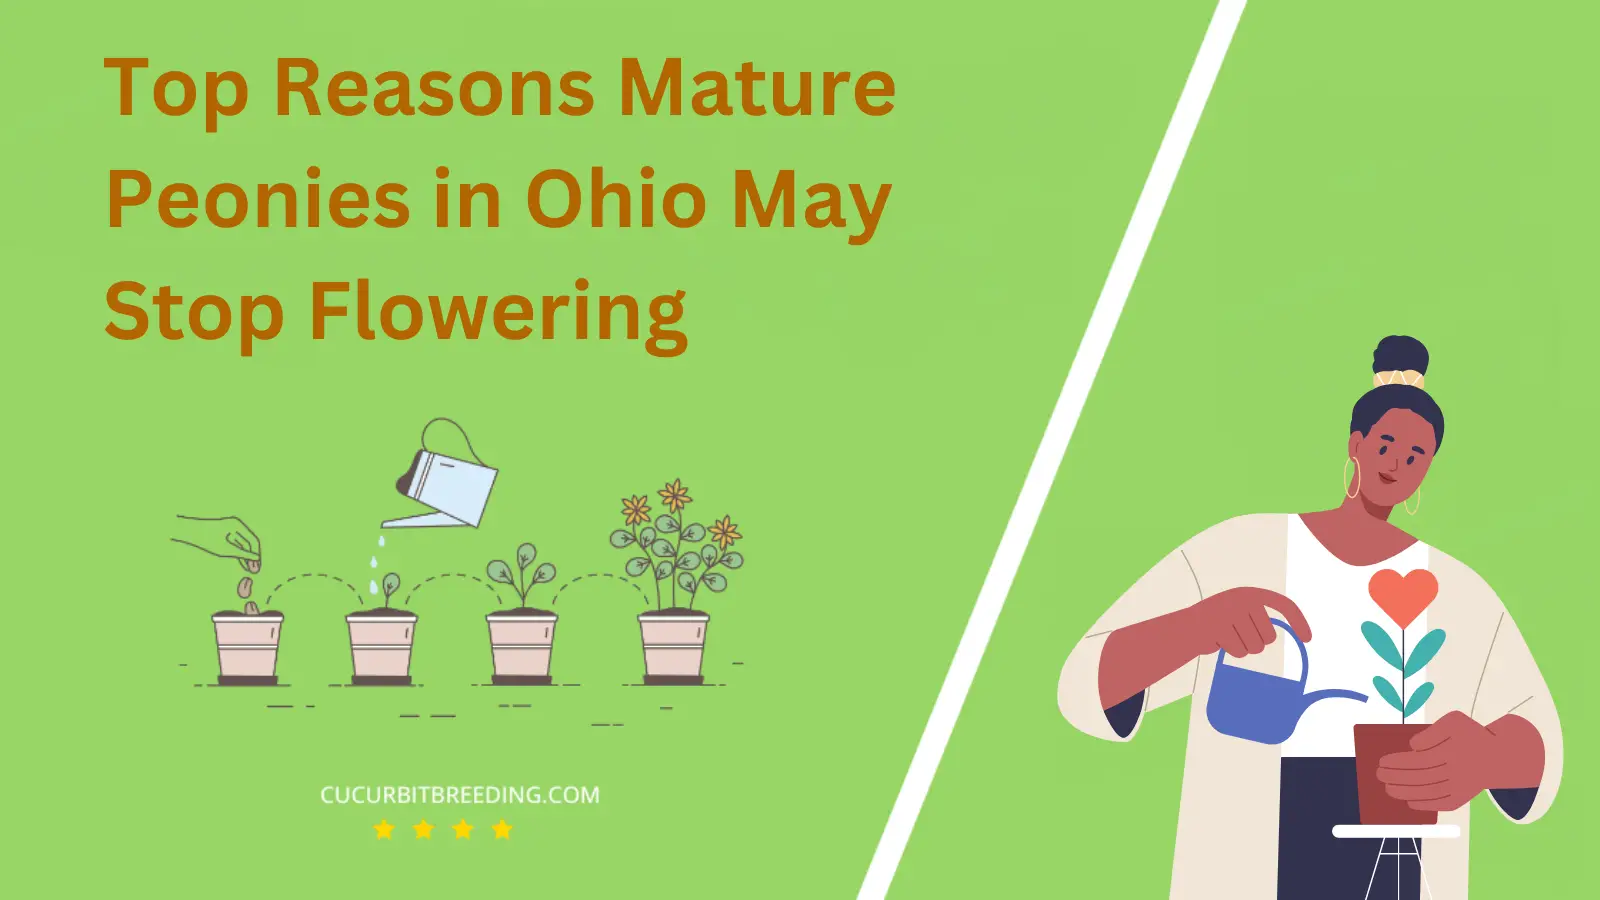 Top Reasons Mature Peonies in Ohio May Stop Flowering